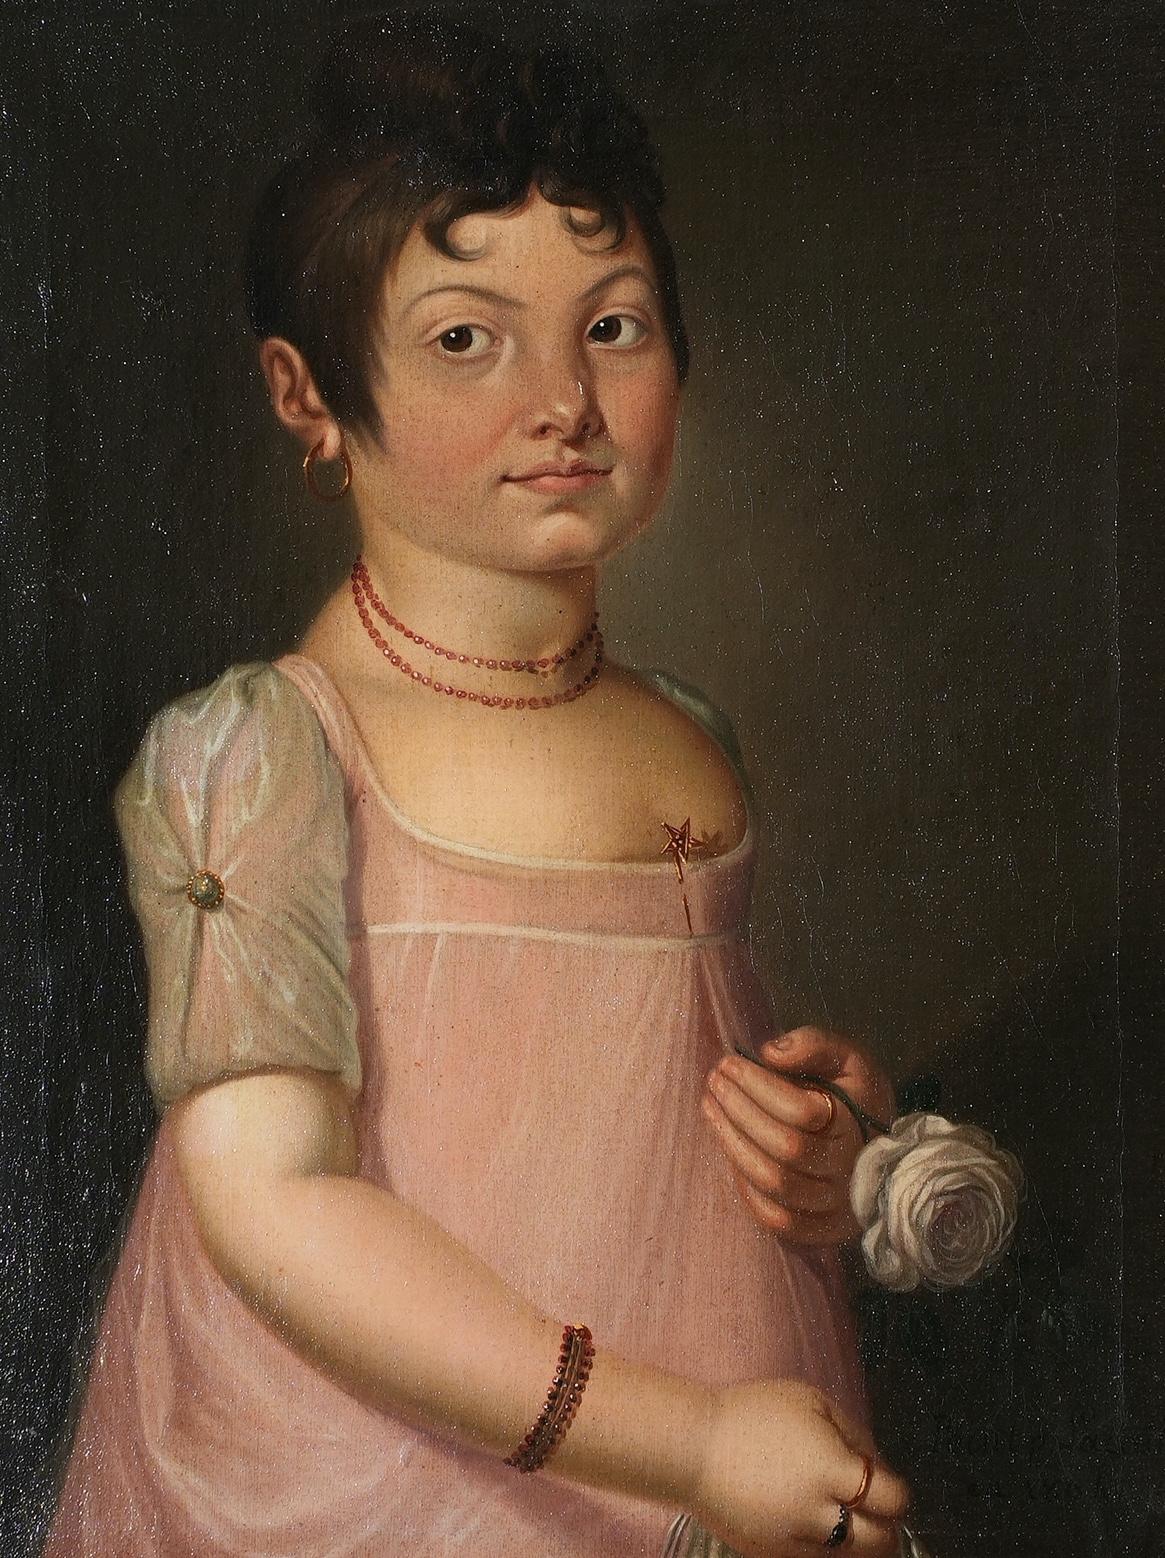 Der Neoklassizismus durchdringt dieses skurrile Porträt eines französischen Mädchens um 1800: das hochgeschlossene Kleid, die antike Frisur 